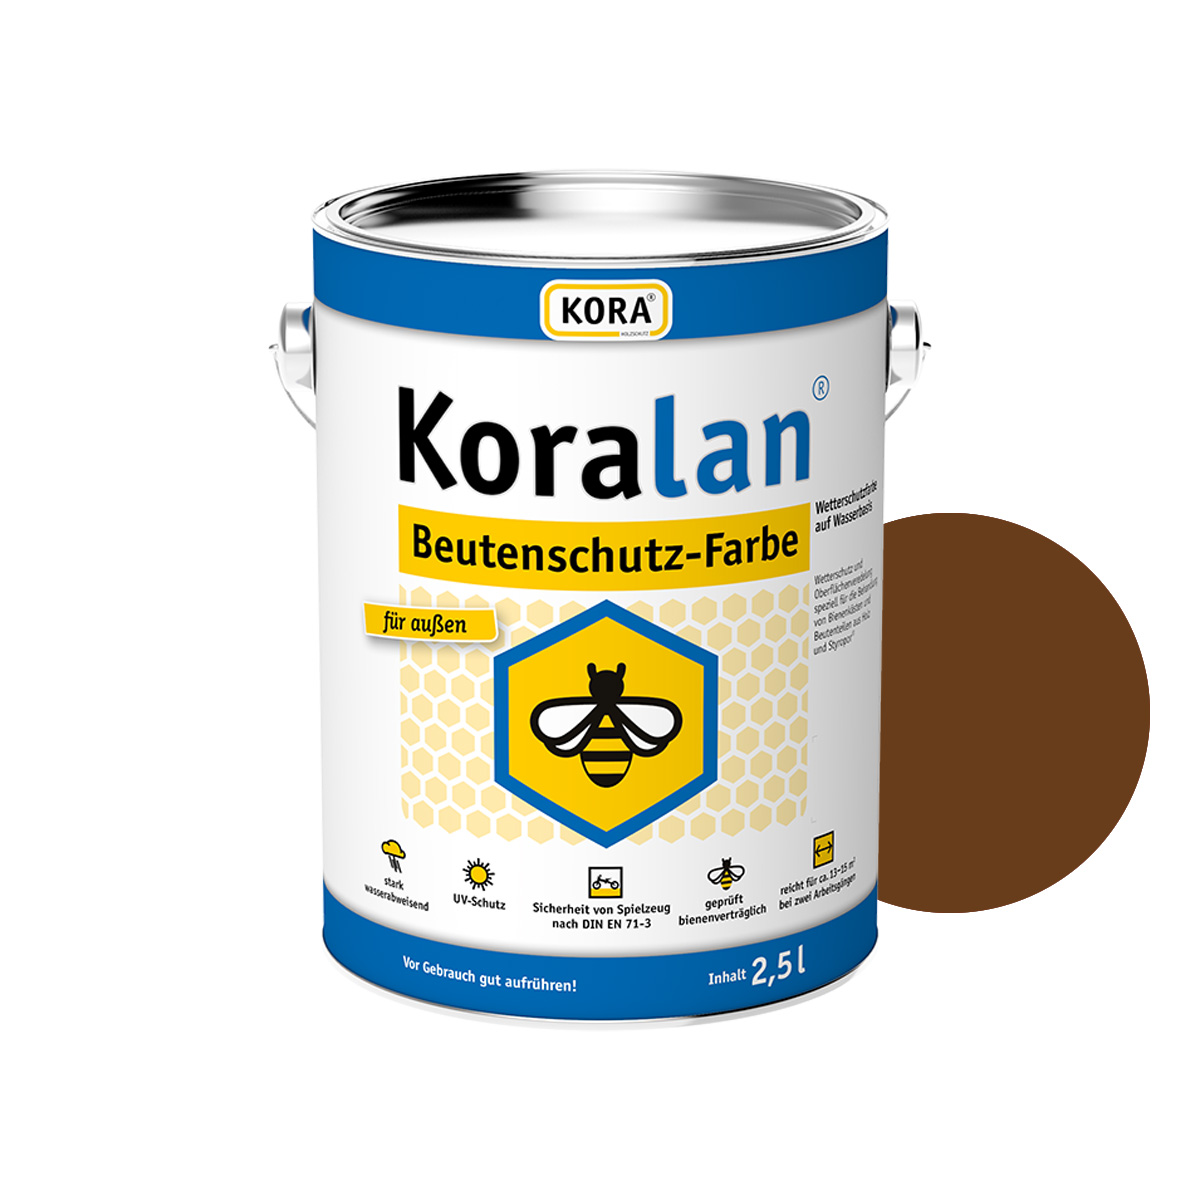 KORA Koralan® Beutenschutz-Farbe | Bienenschutz